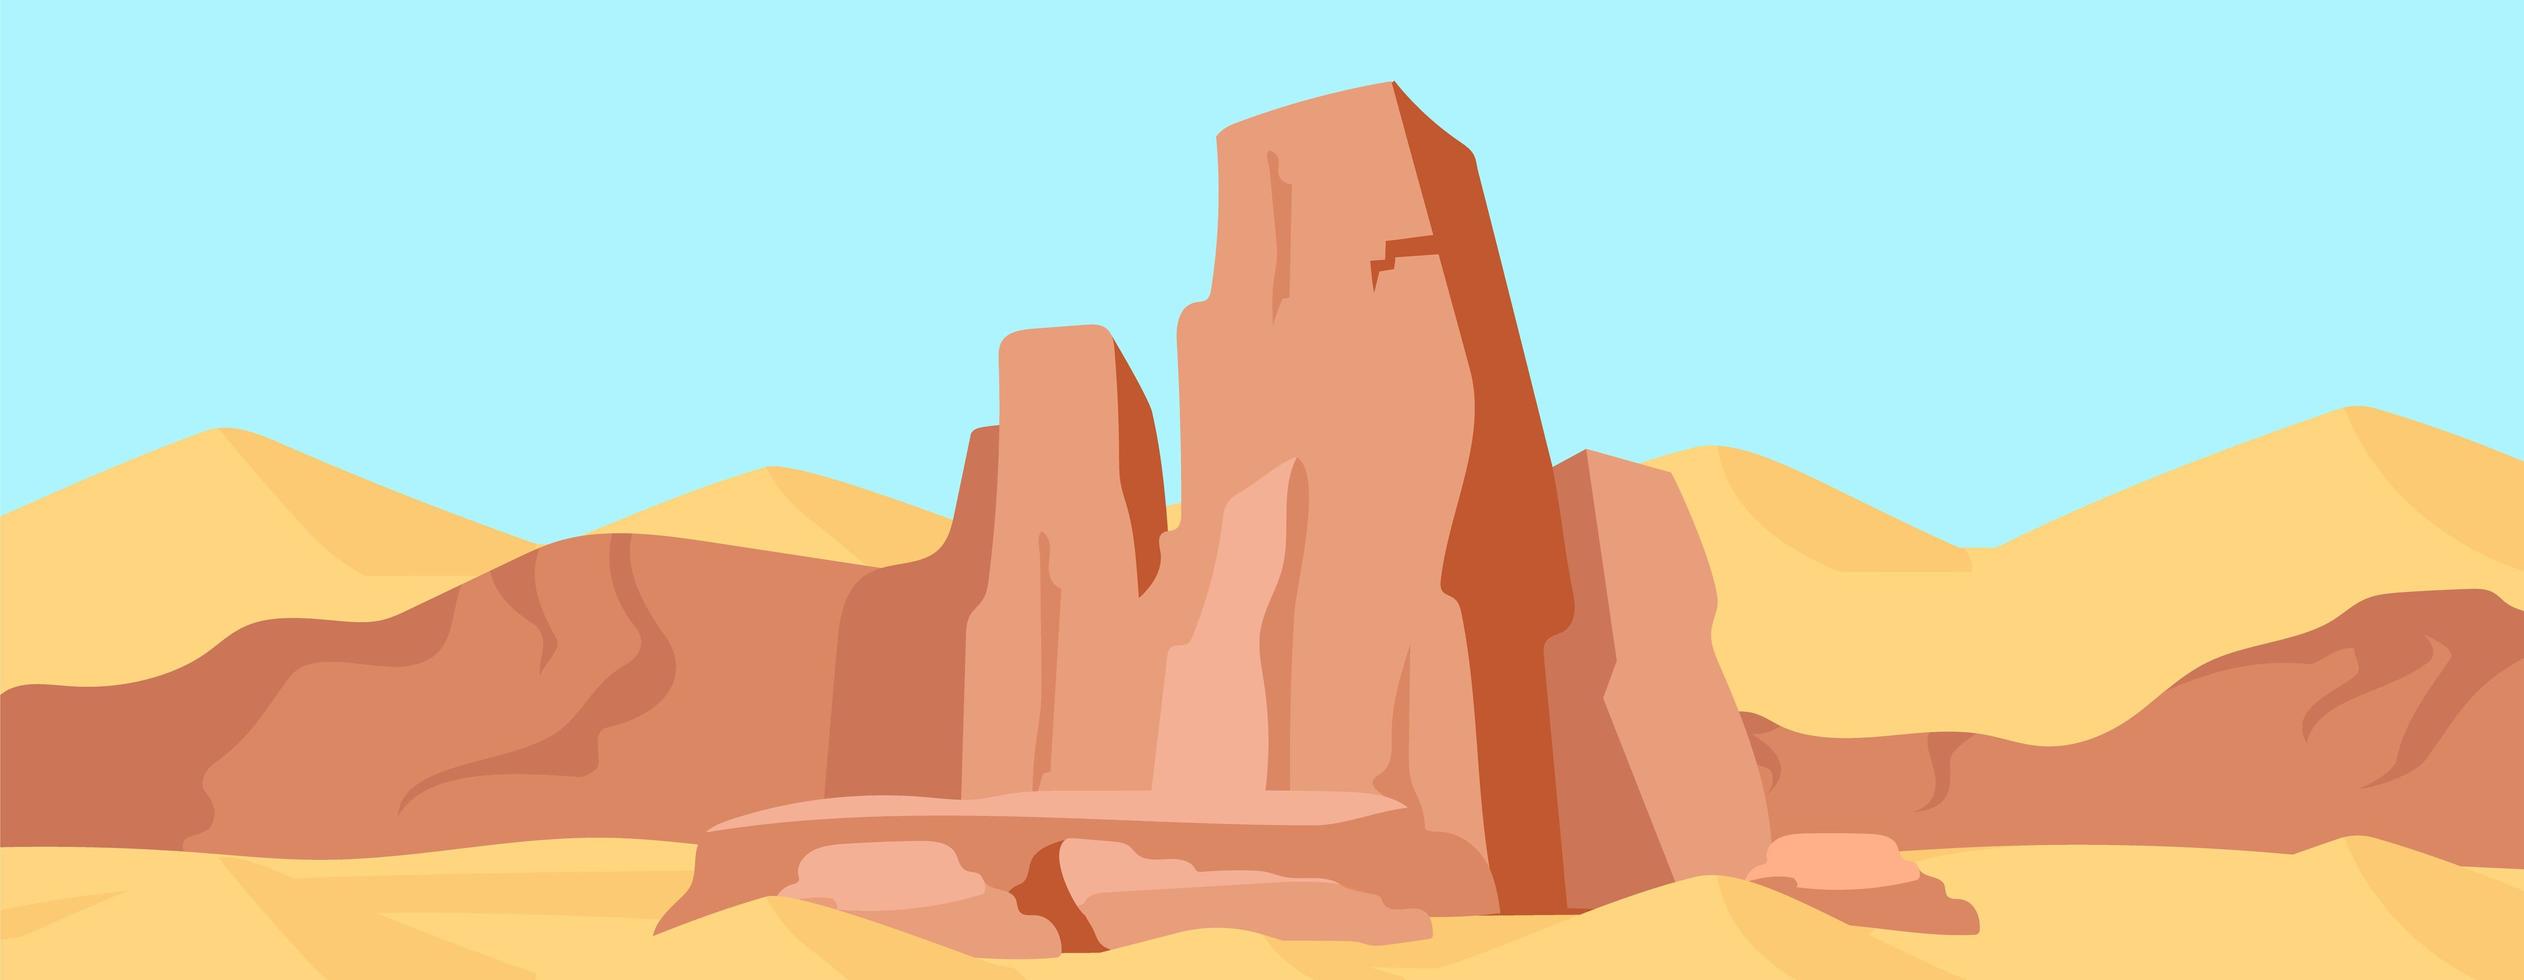 escena de la roca del cañón vector